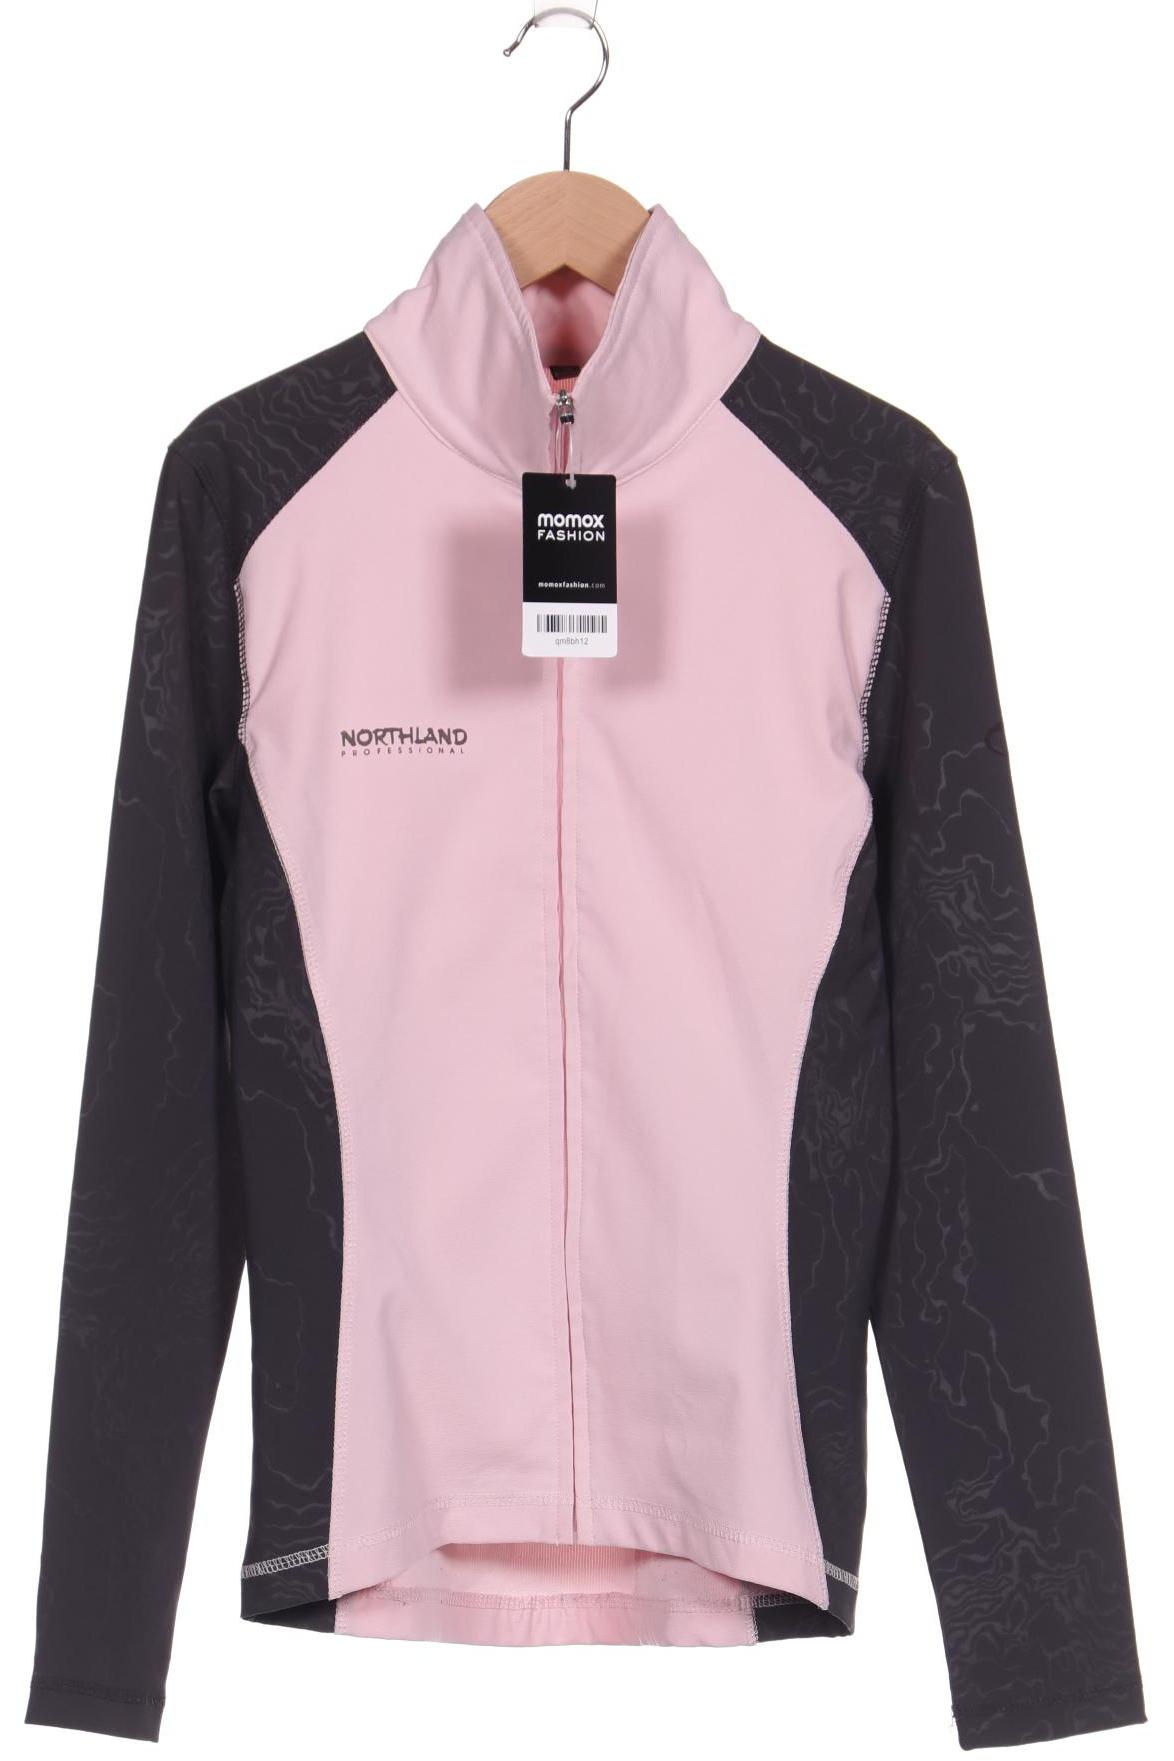 NORTHLAND Professional Damen Jacke, pink von NORTHLAND Professional